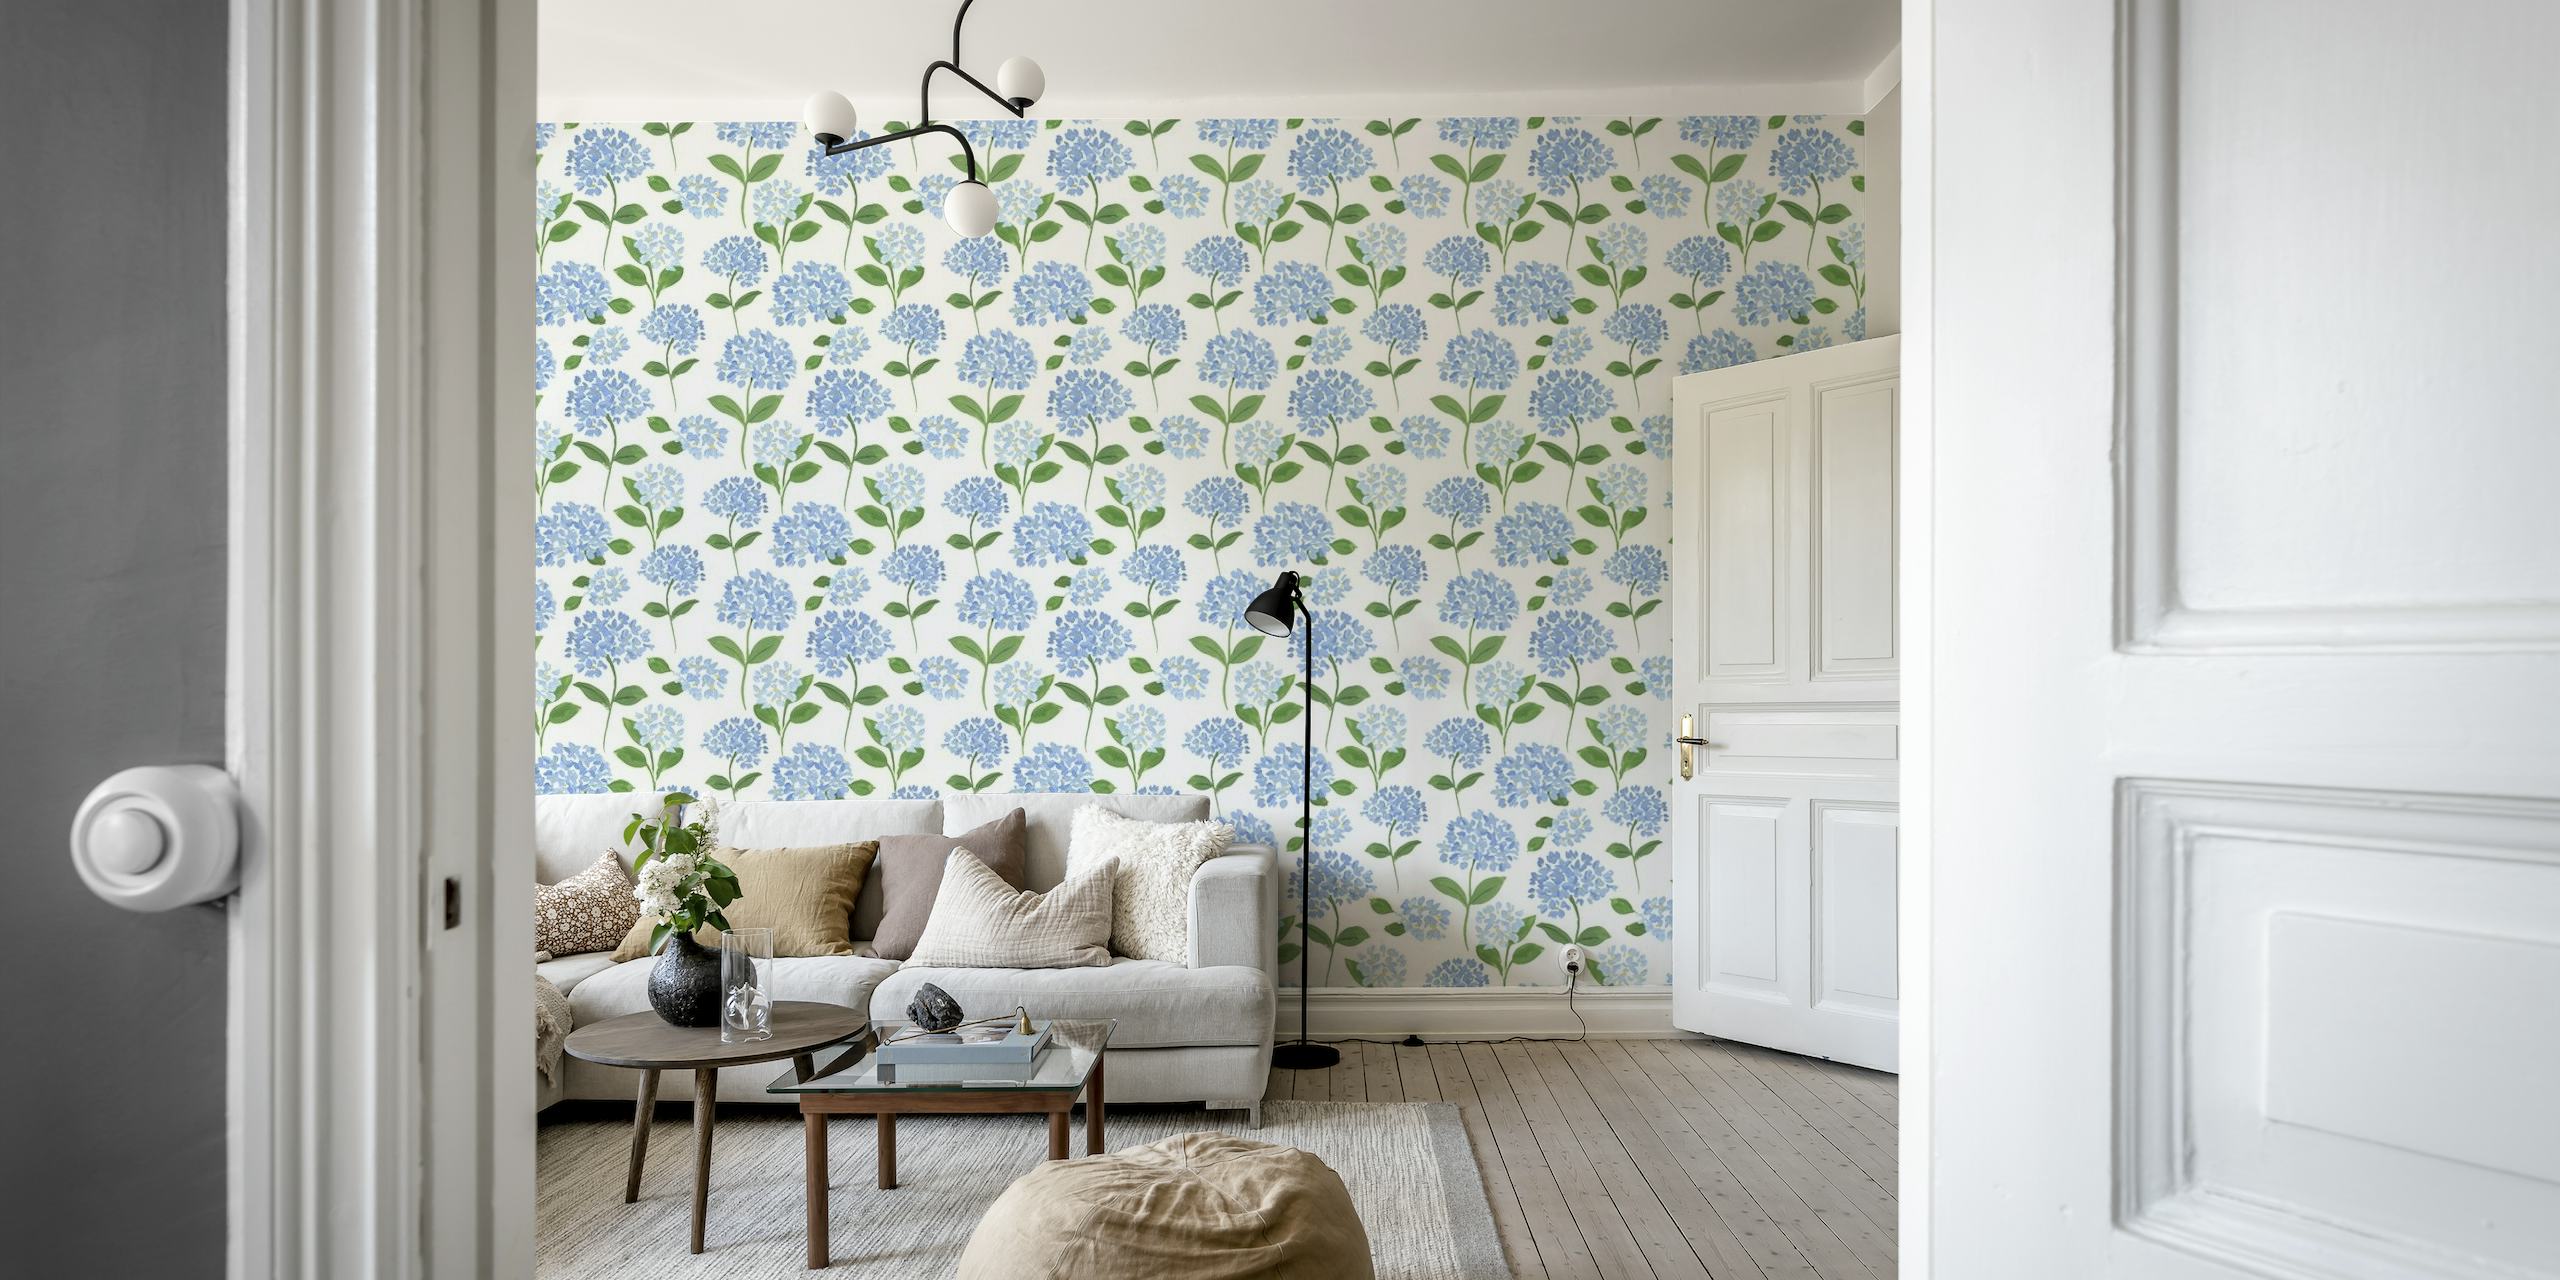 Blue Hydrangea Wallpaper behang